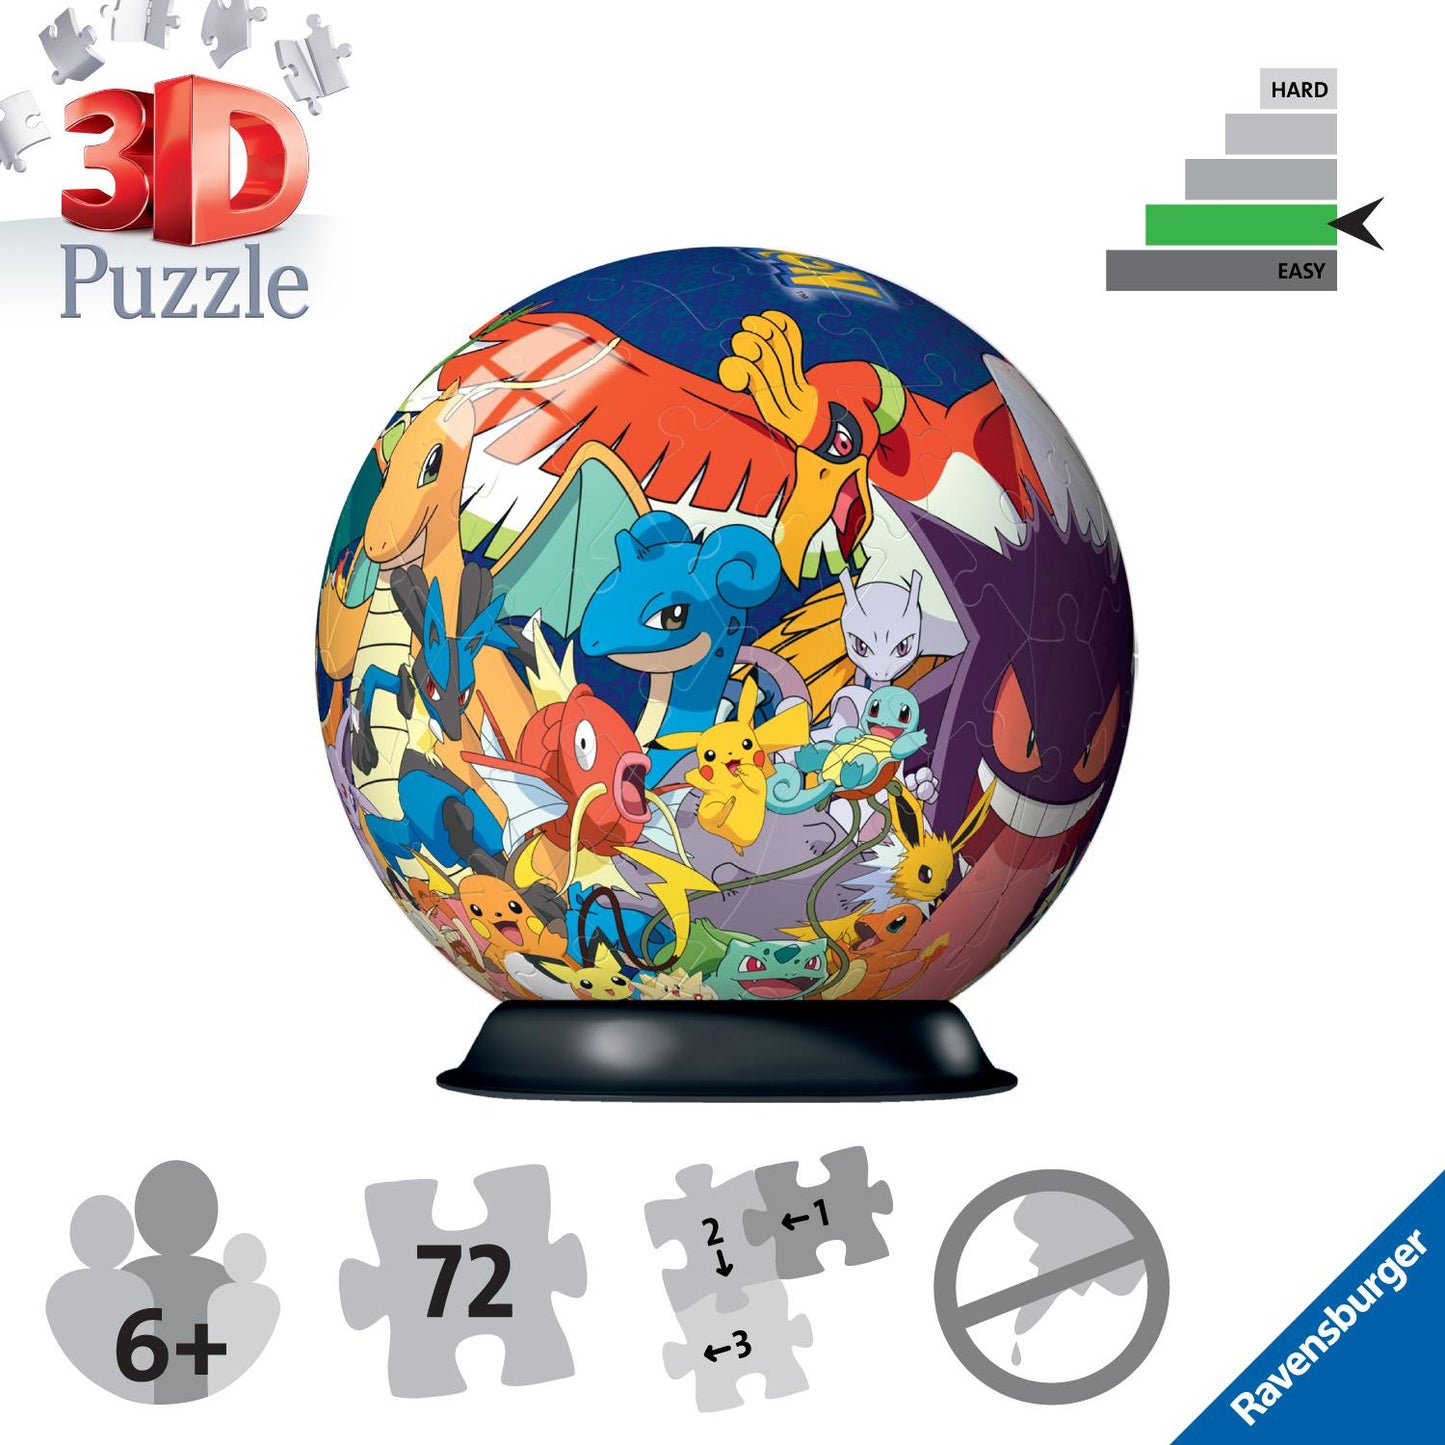 Pokemon 3D Puzzle, 72pc